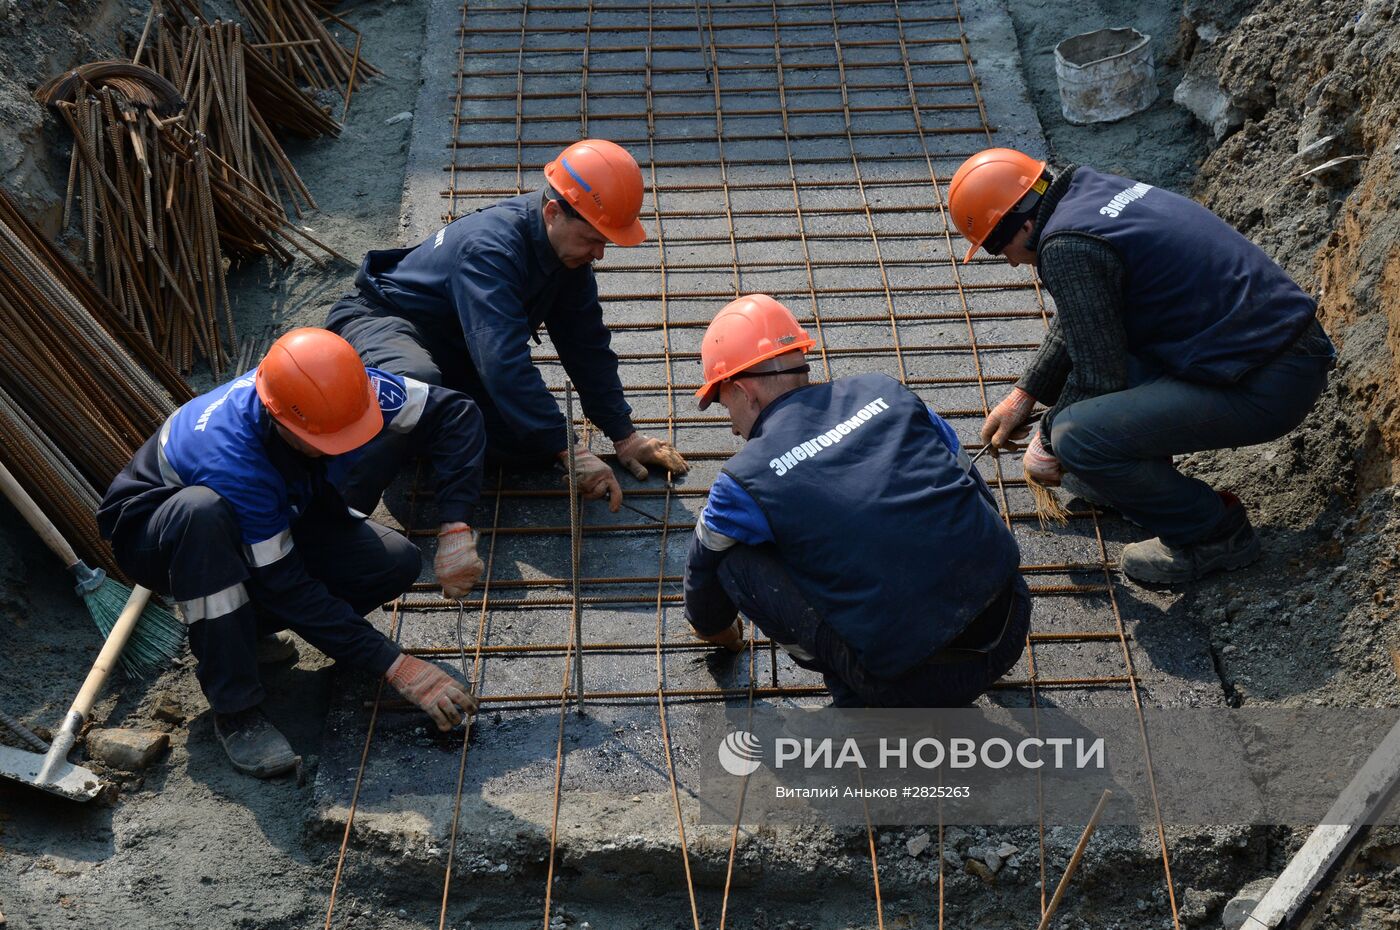 Завершающий этап строительства ТЭЦ "Восточная" во Владивостоке